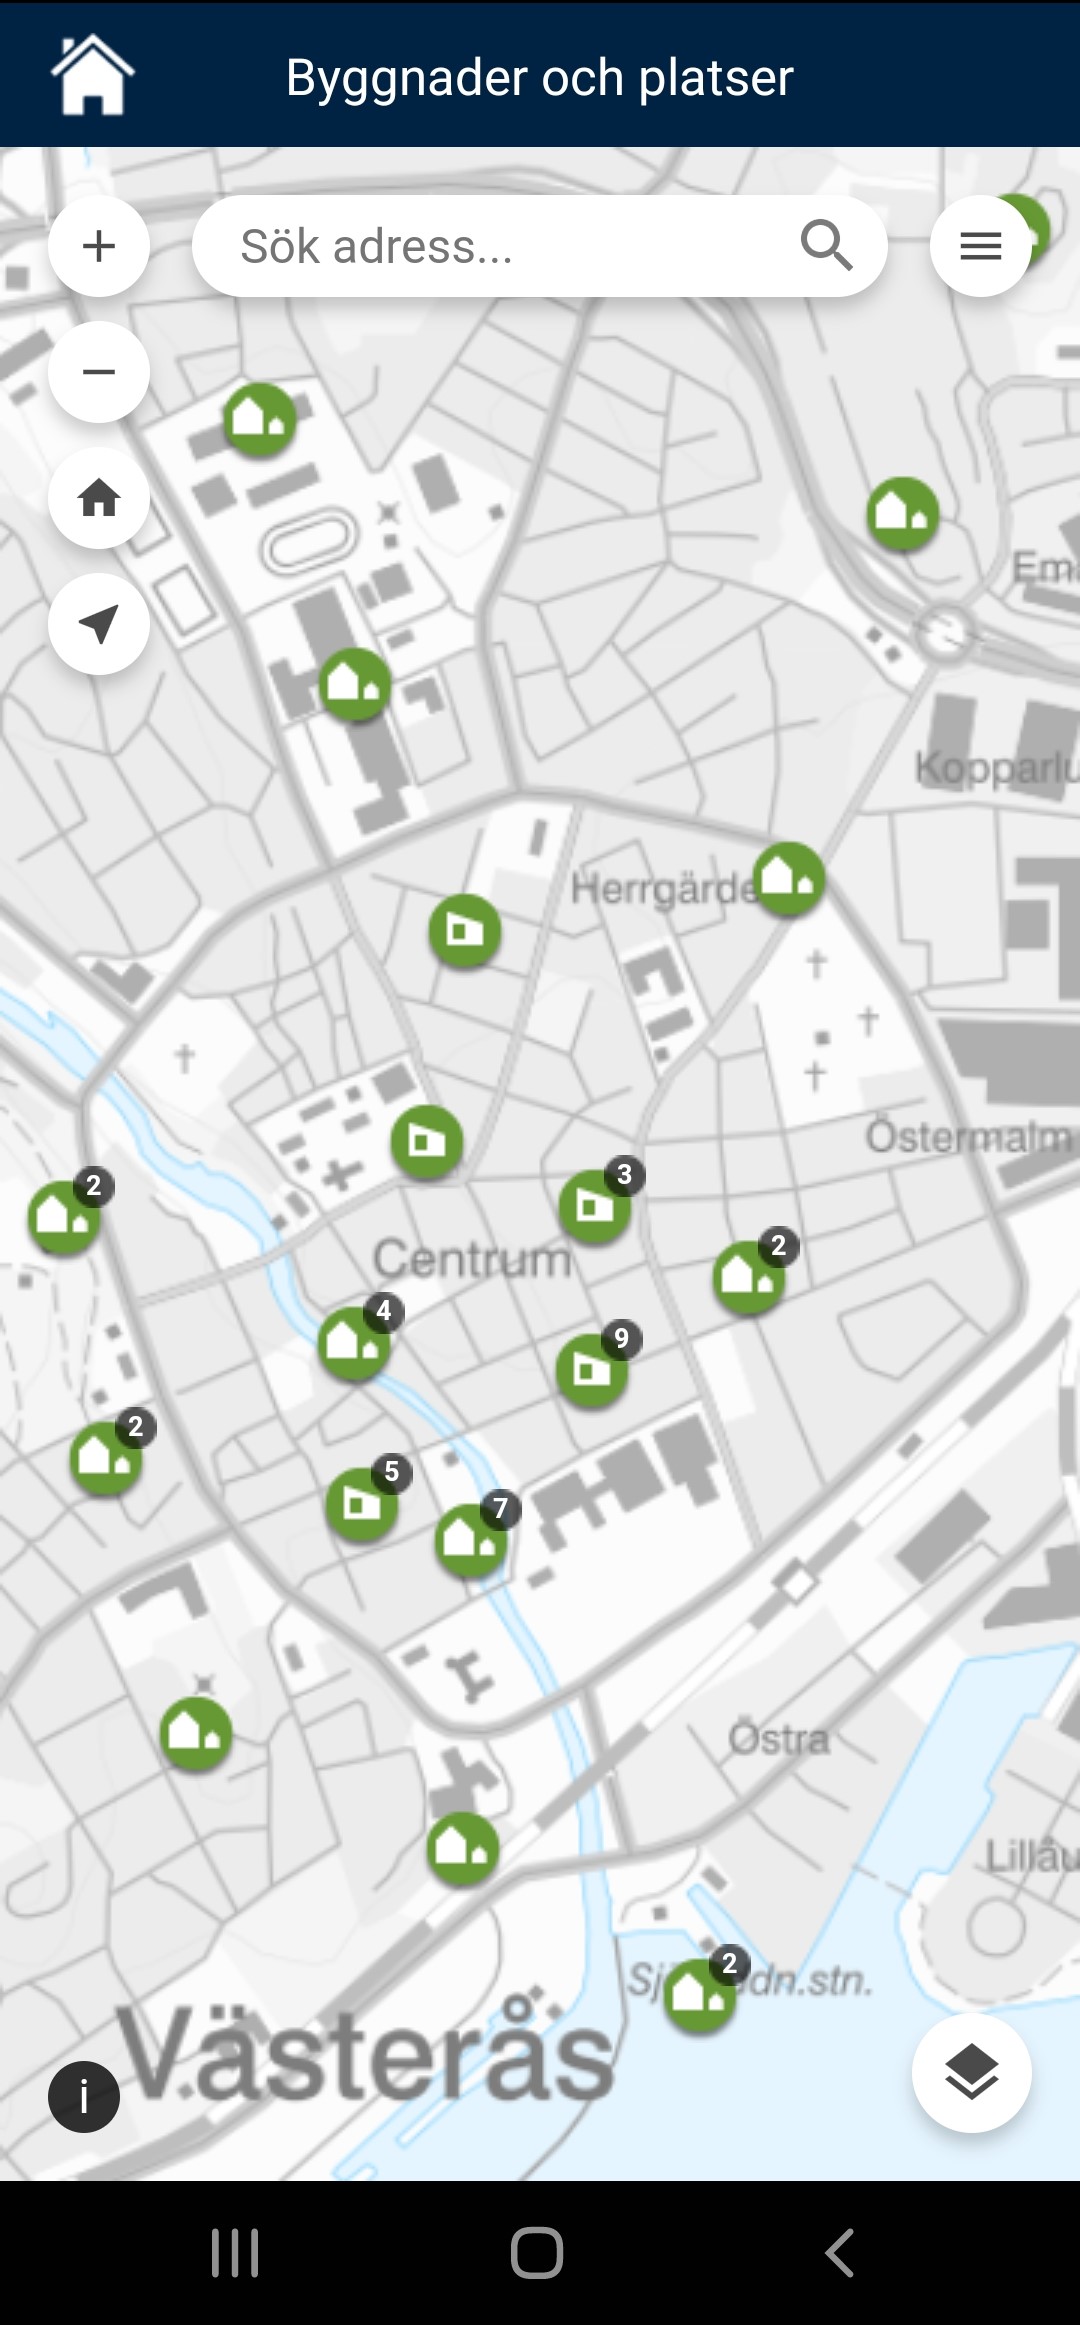 Skärmdump av appen Mitt Västerås och kartlagret Byggnader och platser. En kartbild över centrala Västerås med gröna markeringar för de byggnader och platser som det finns information om.